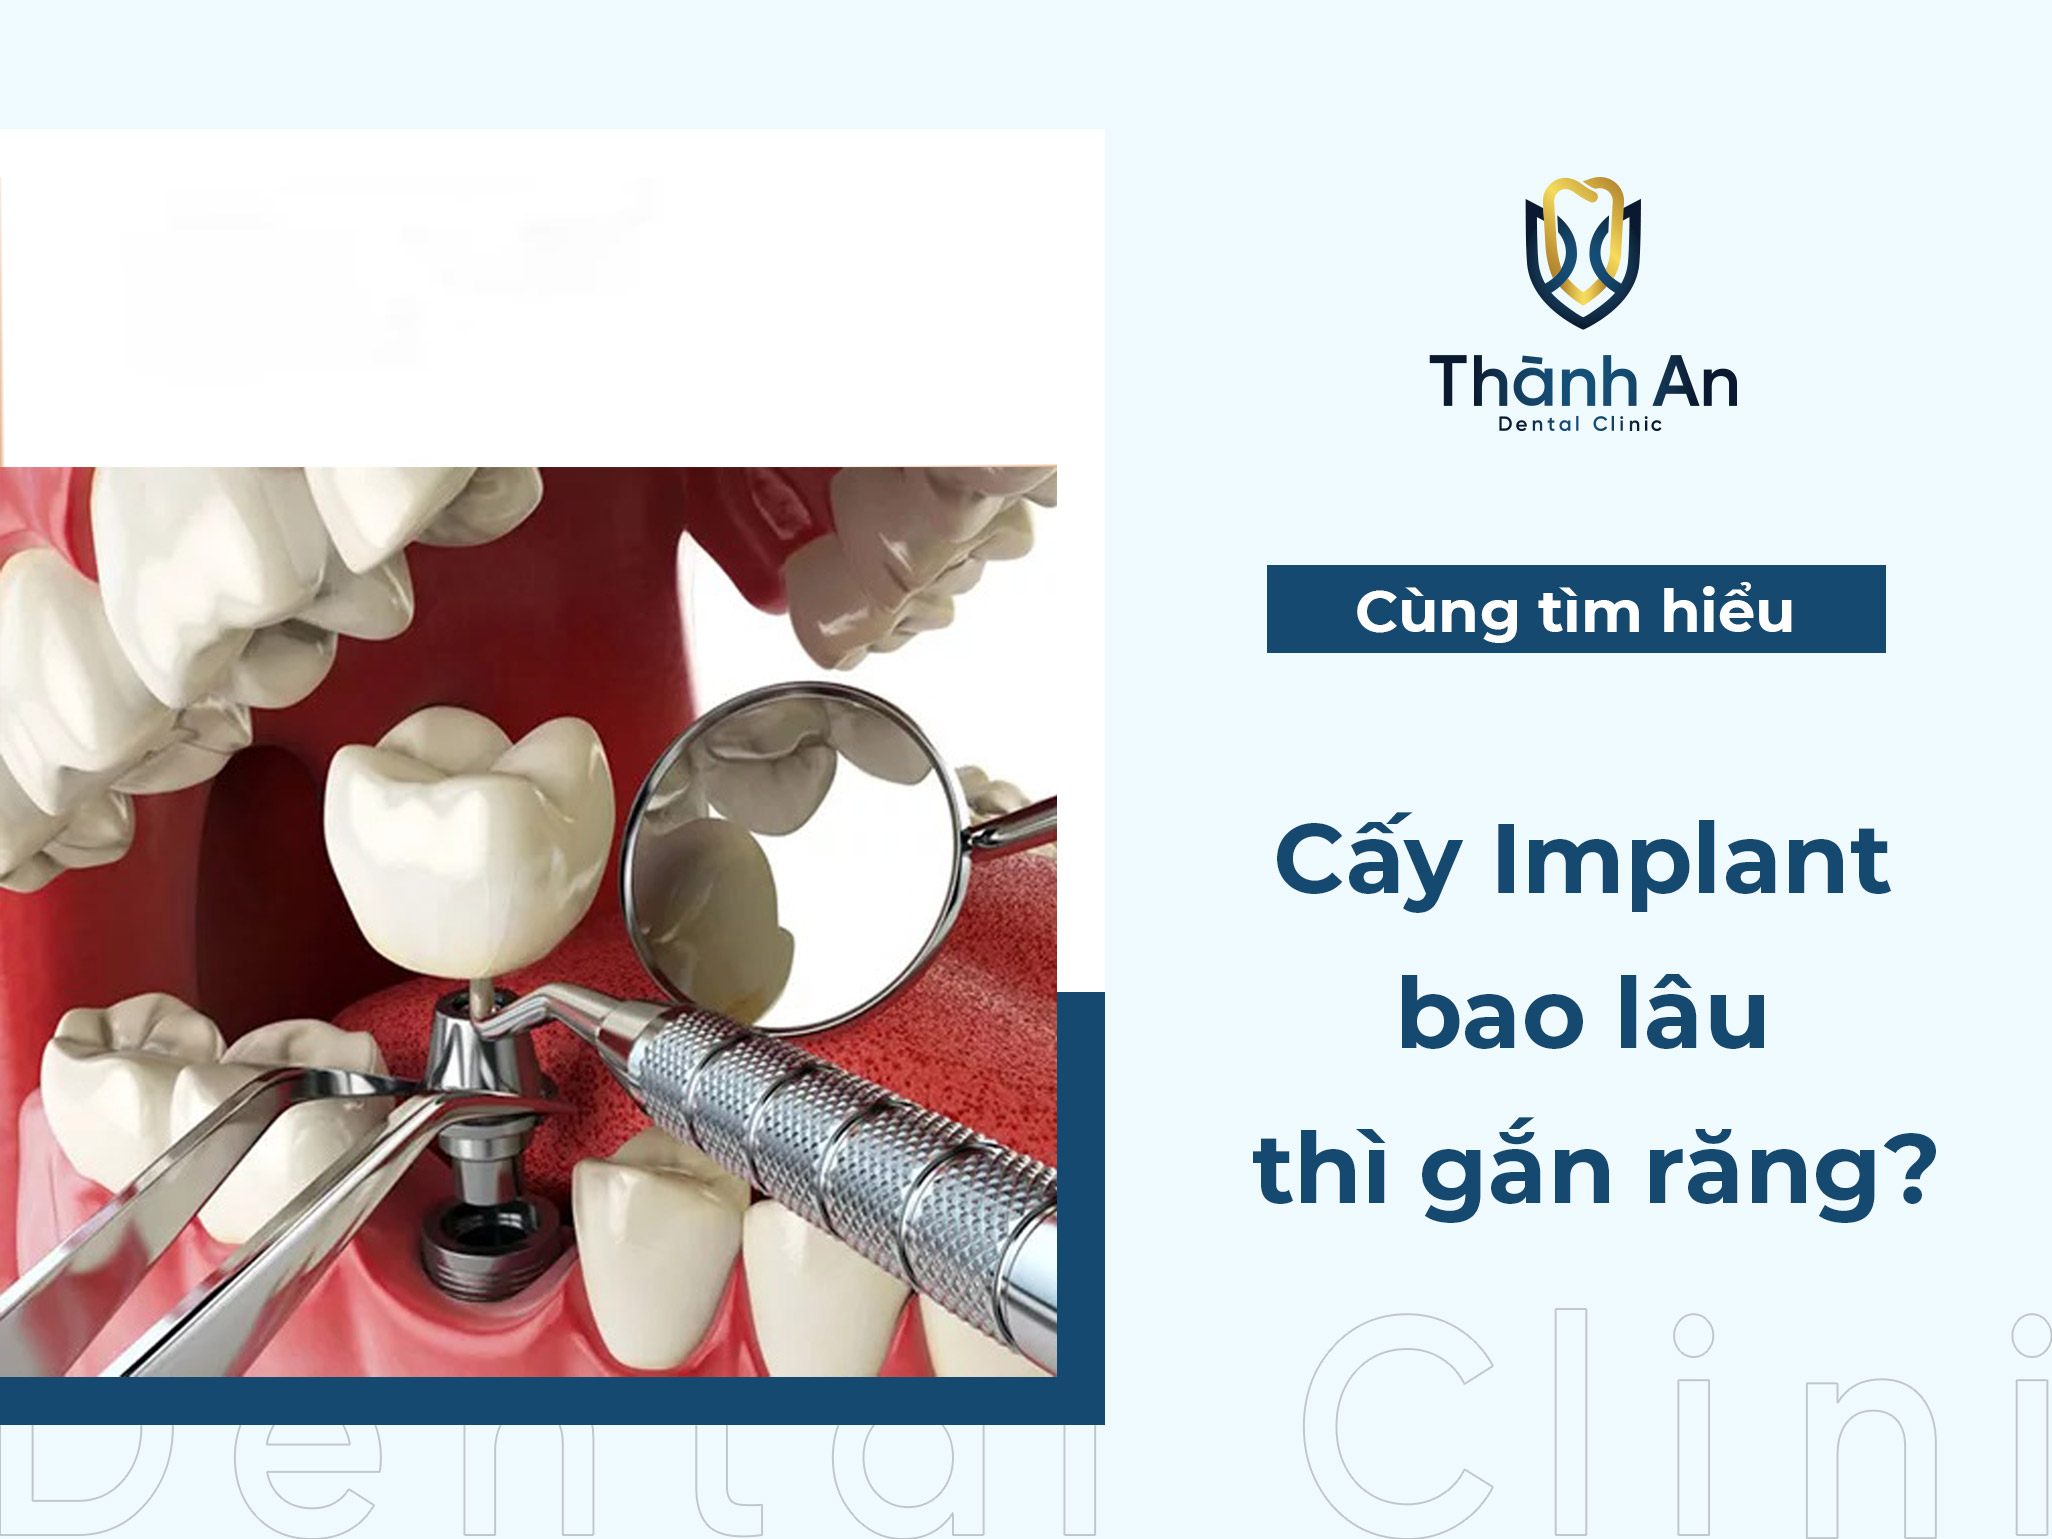 Cấy implant bao lâu thì gắn răng?